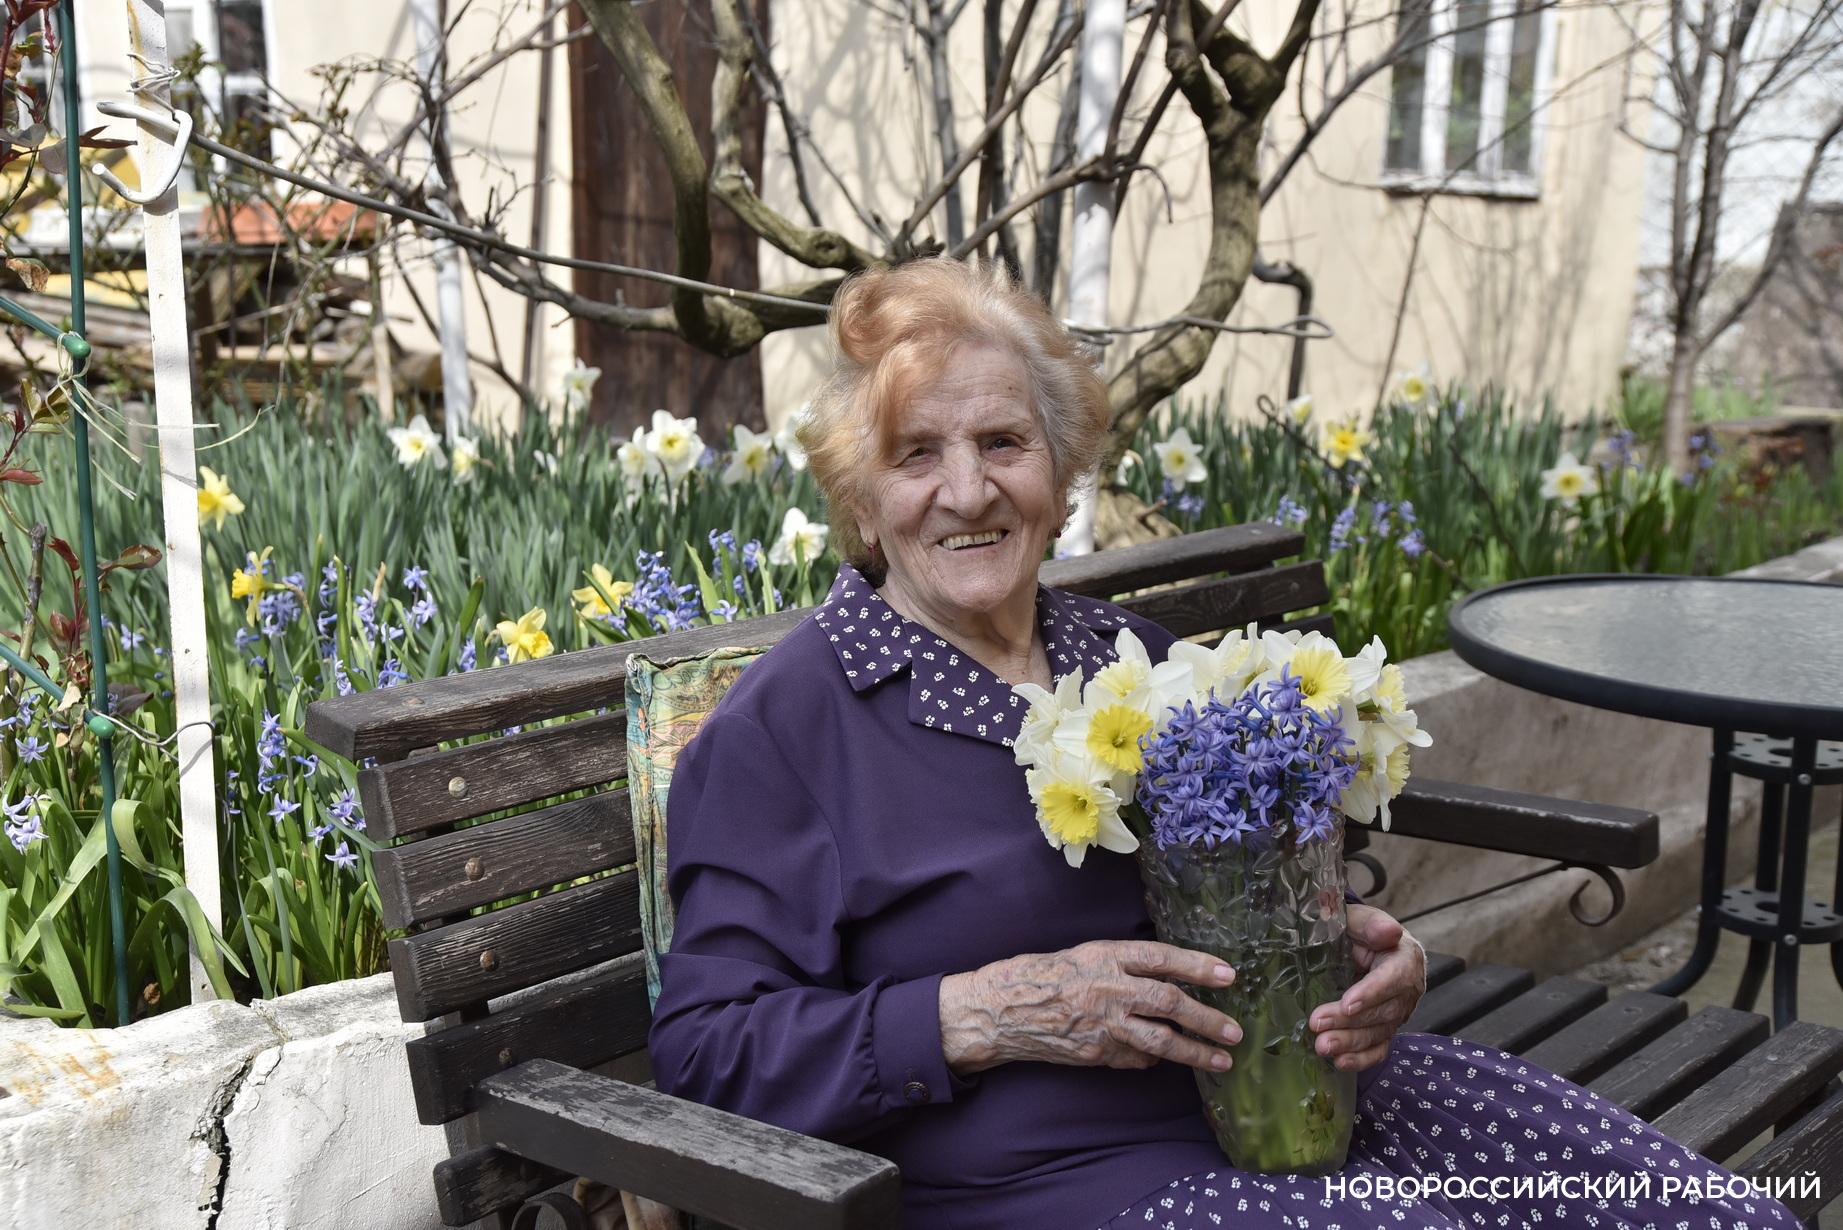 В Новороссийске живет суперподписчица «Новороссийского рабочего». Ее стаж — 75 лет!